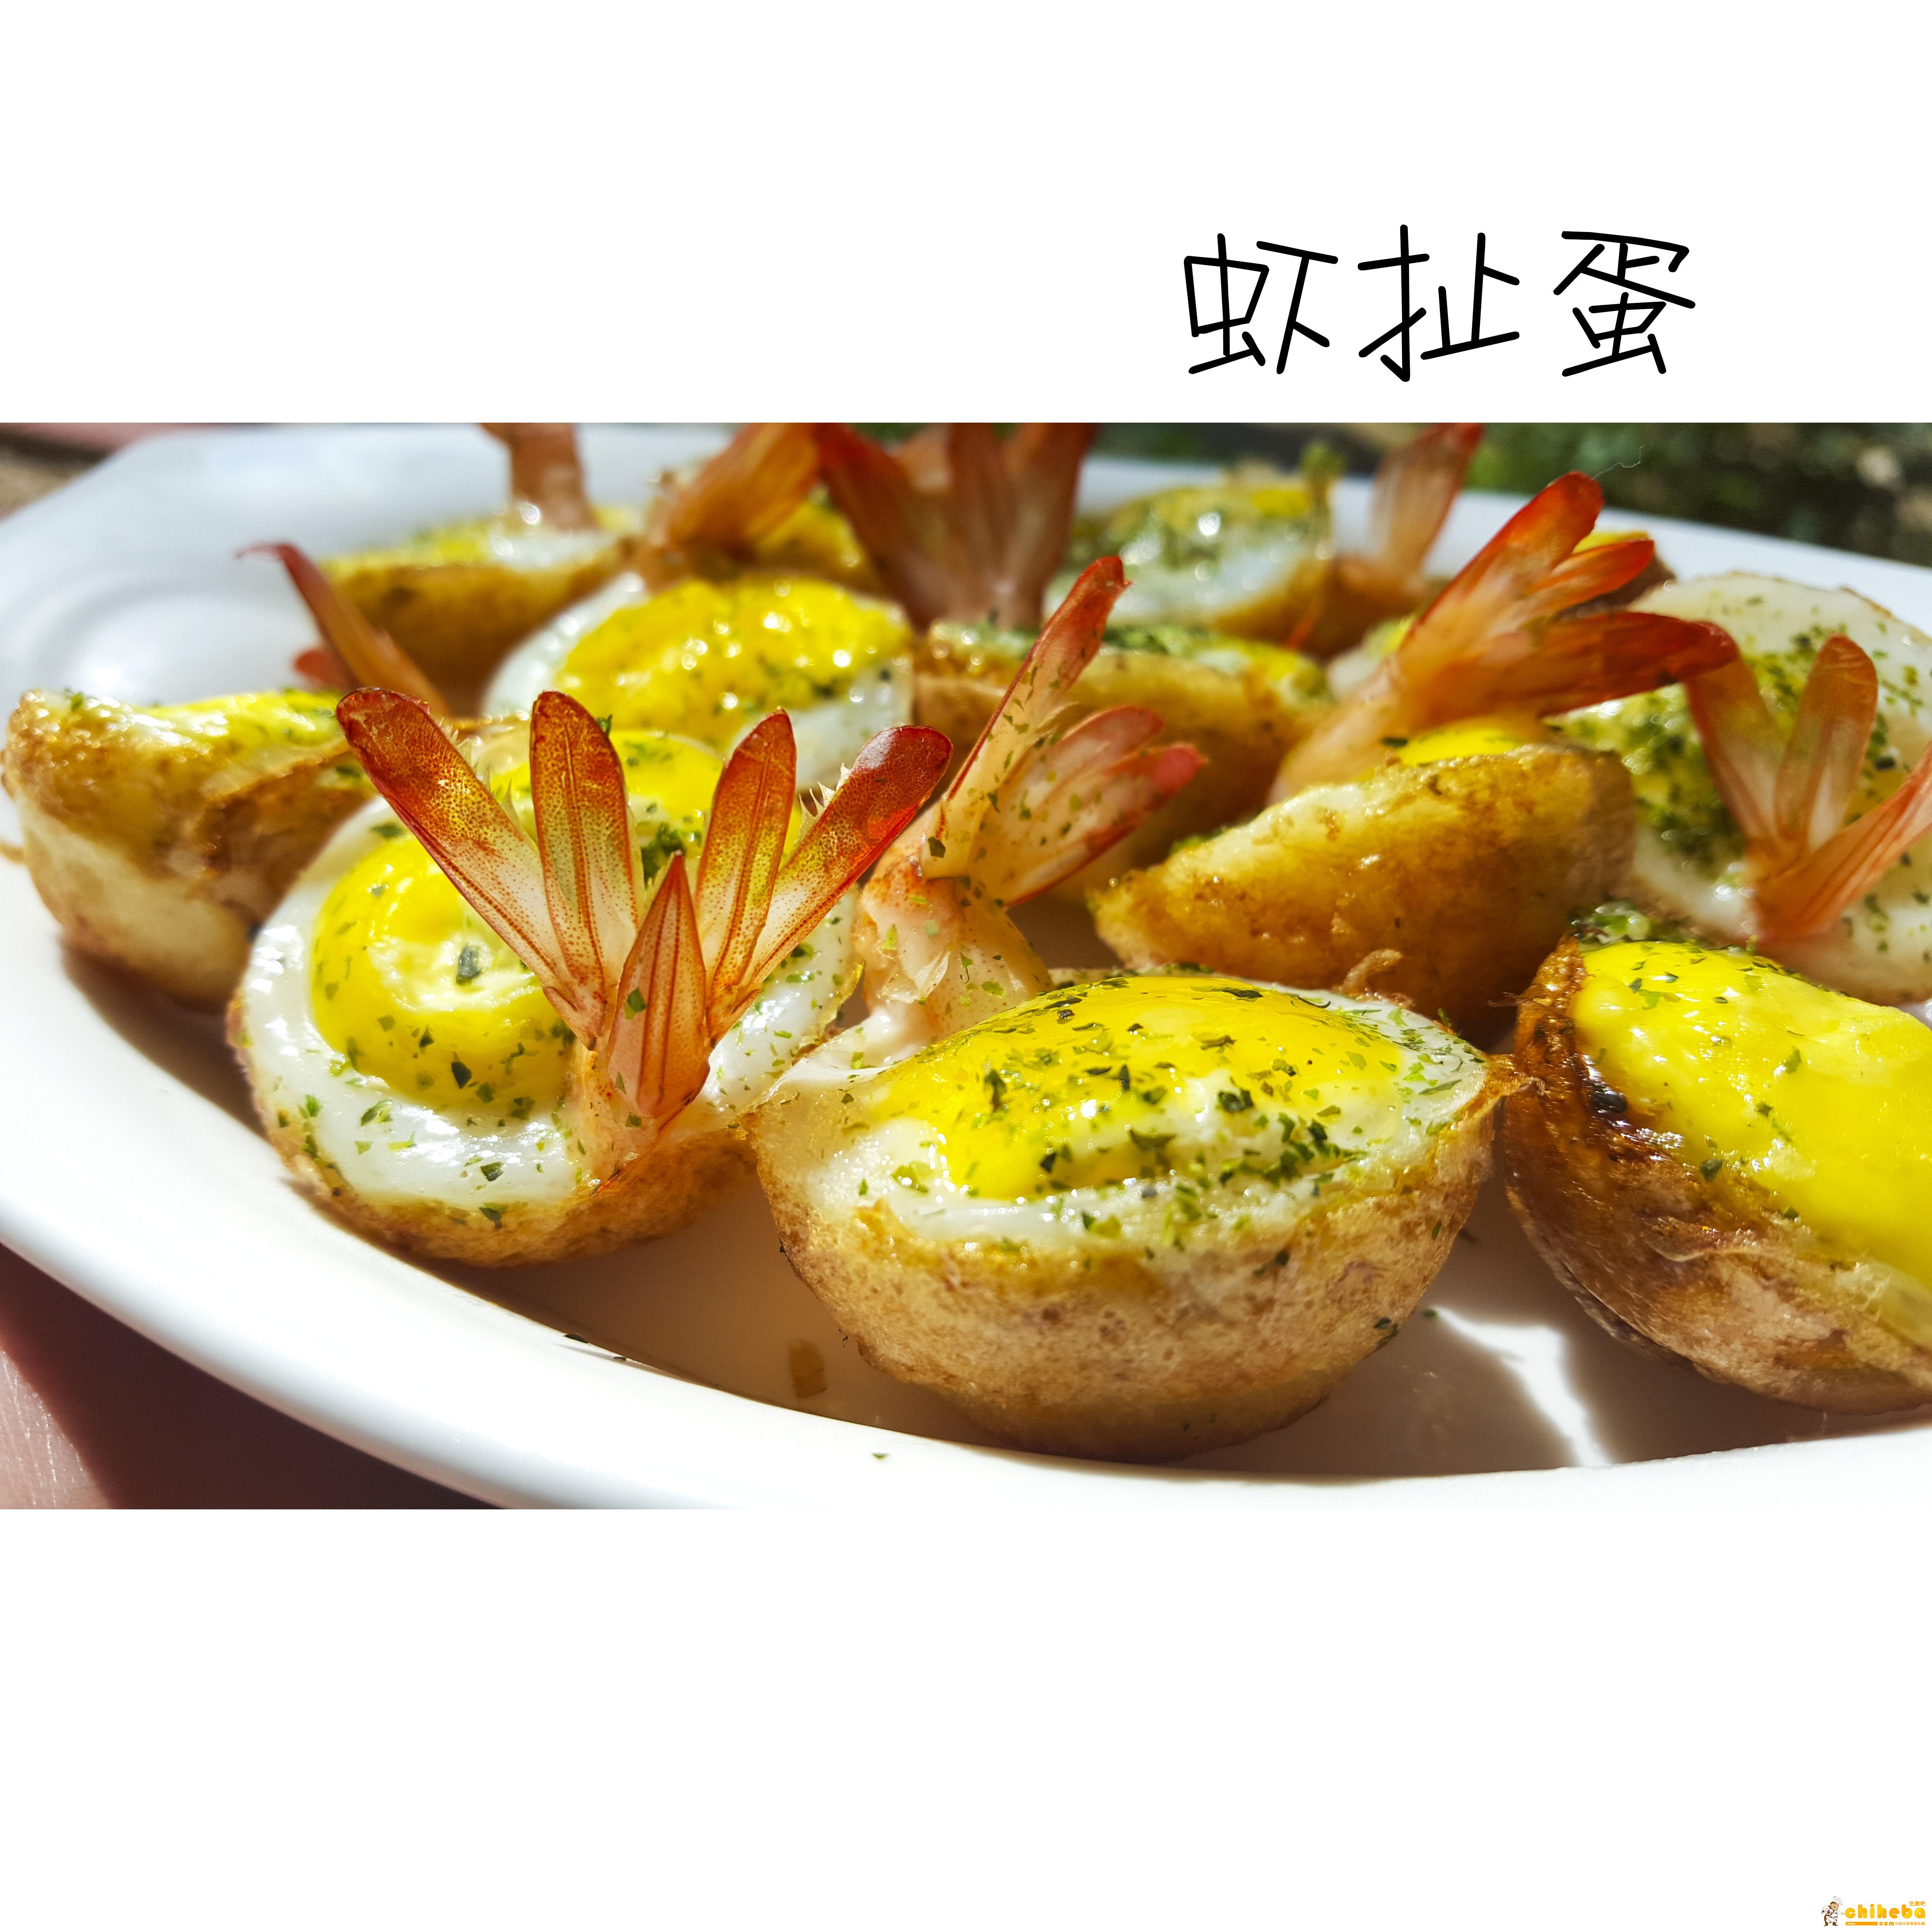 虾扯蛋——台湾夜市小吃